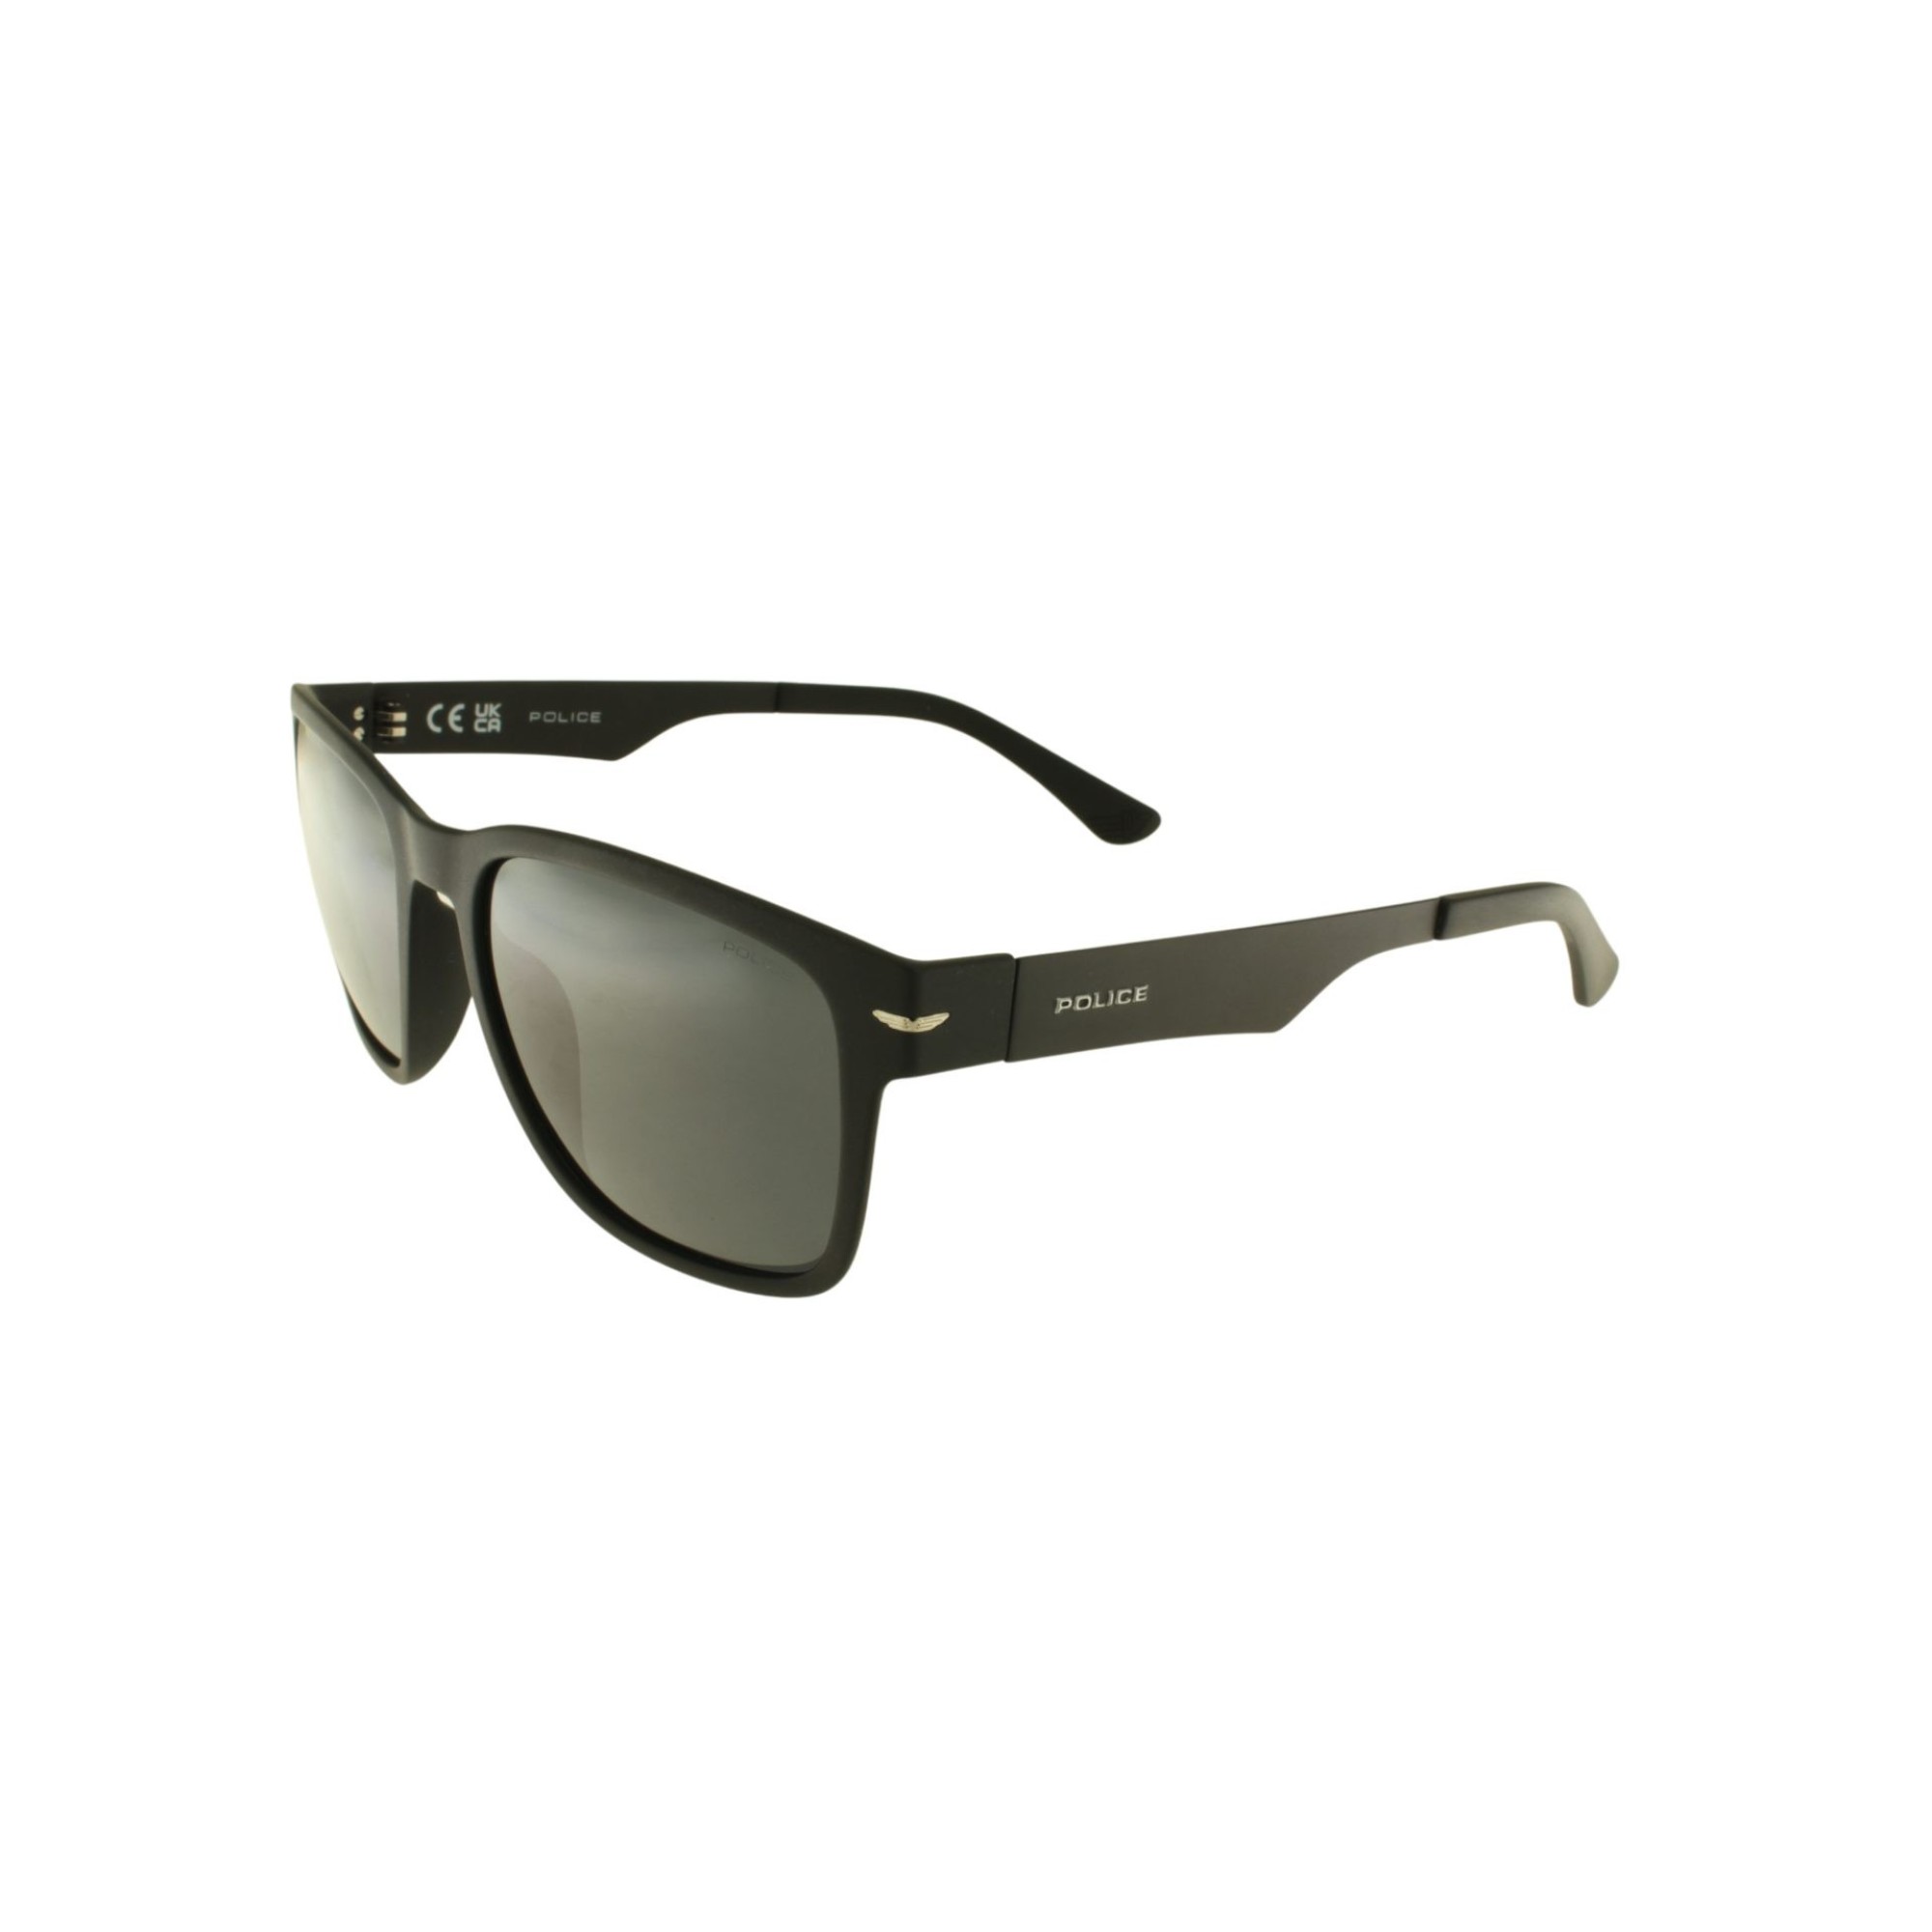  Police Unisex Horn-Rimmed Polarized Sunglasses SPLL09V